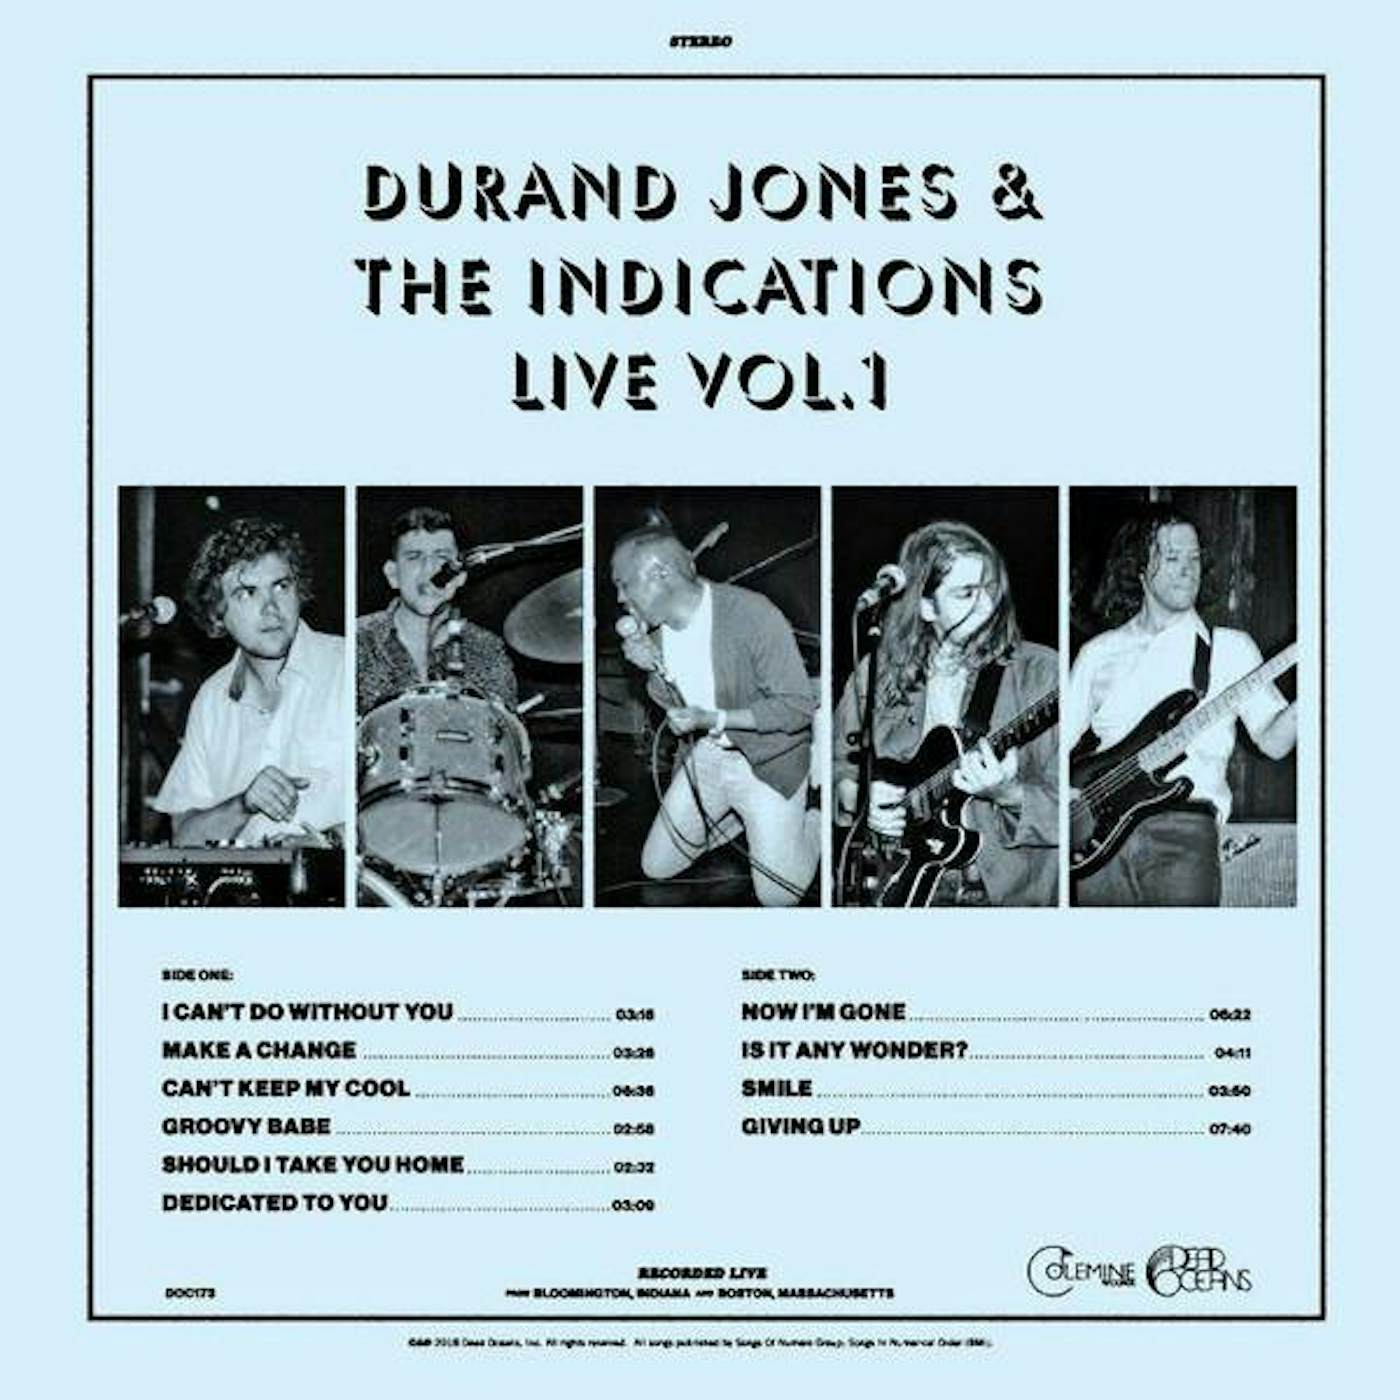 DURAND JONES & THE INDICATIONS: LIVE VOL. 1 Vinyl Record